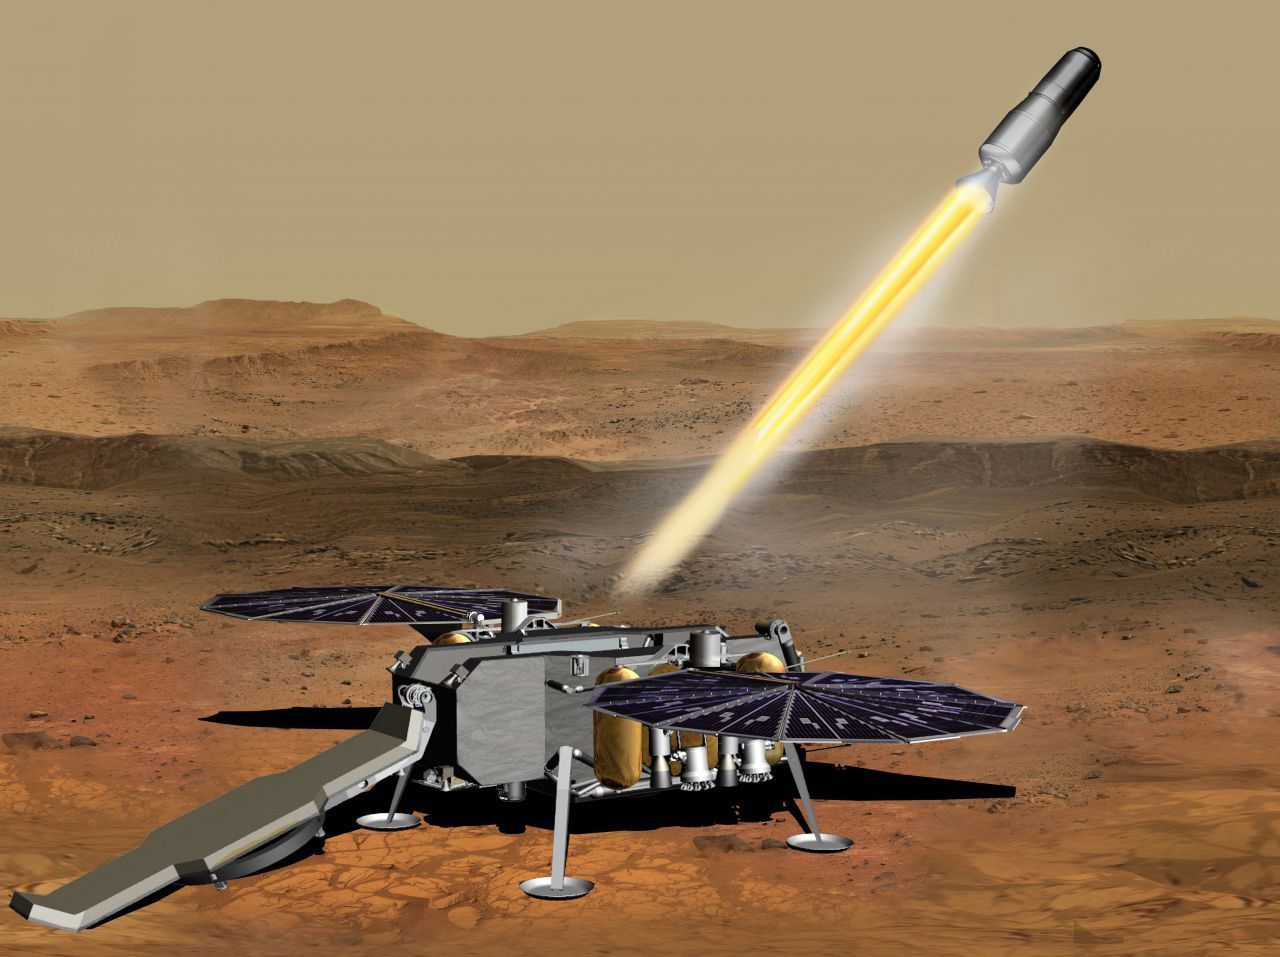 Damit könnte "Perseverance" einen alten Traum der Mars-Forschung wahr machen: Die gesammelten Proben sollen eines Tages abgeholt und mit einer Rückkehr-Sonde zur Erde transportiert werden.